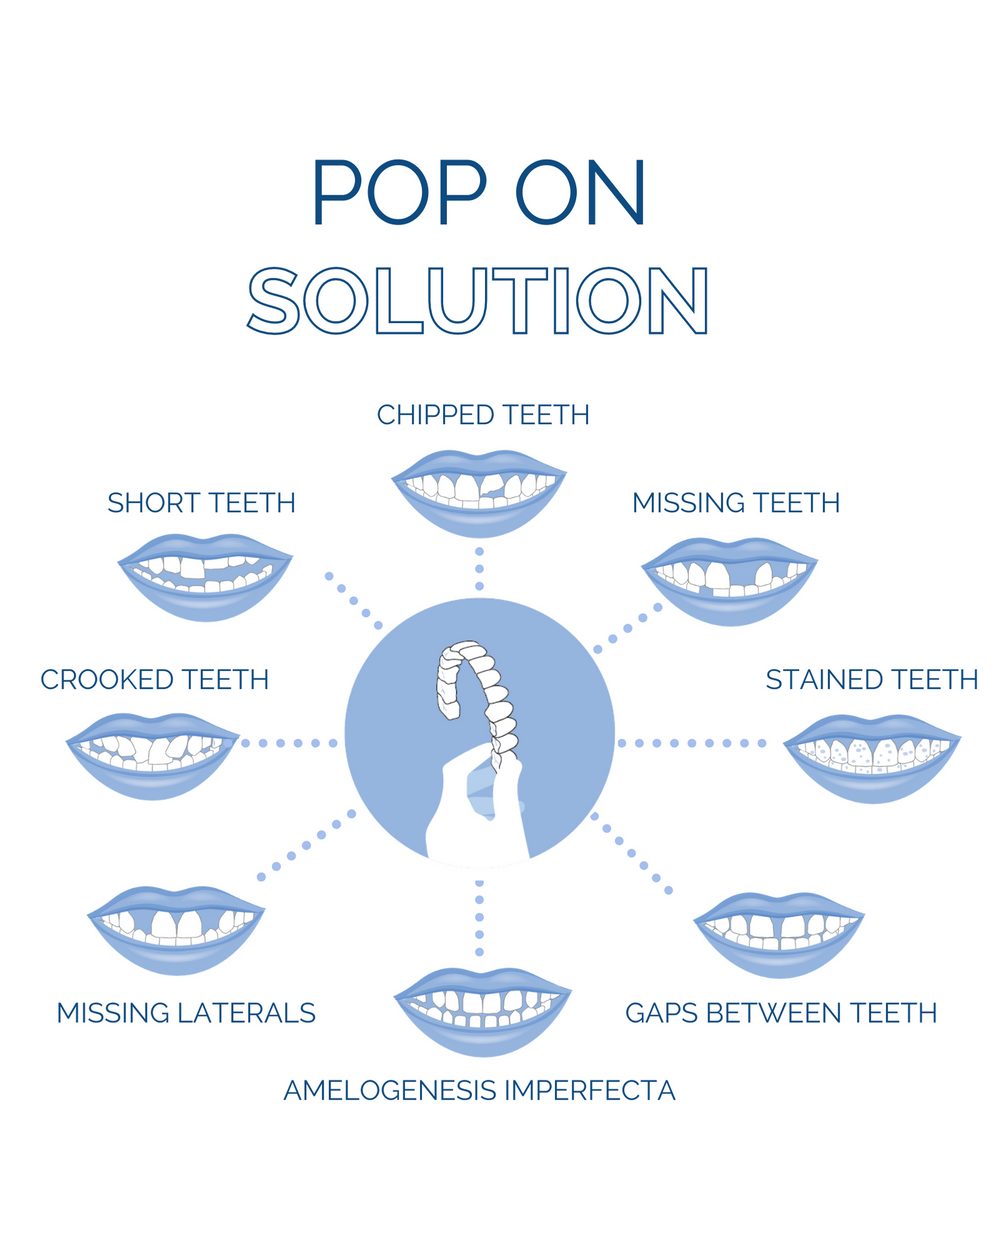 : Pop On Veneers is a cosmetic solution for missing teeth, gaps between teeth, chipped teeth, stained teeth, missing laterals, crooked teeth, short teeth, missing laterals, amelogenesis imperfecta and other dental concerns